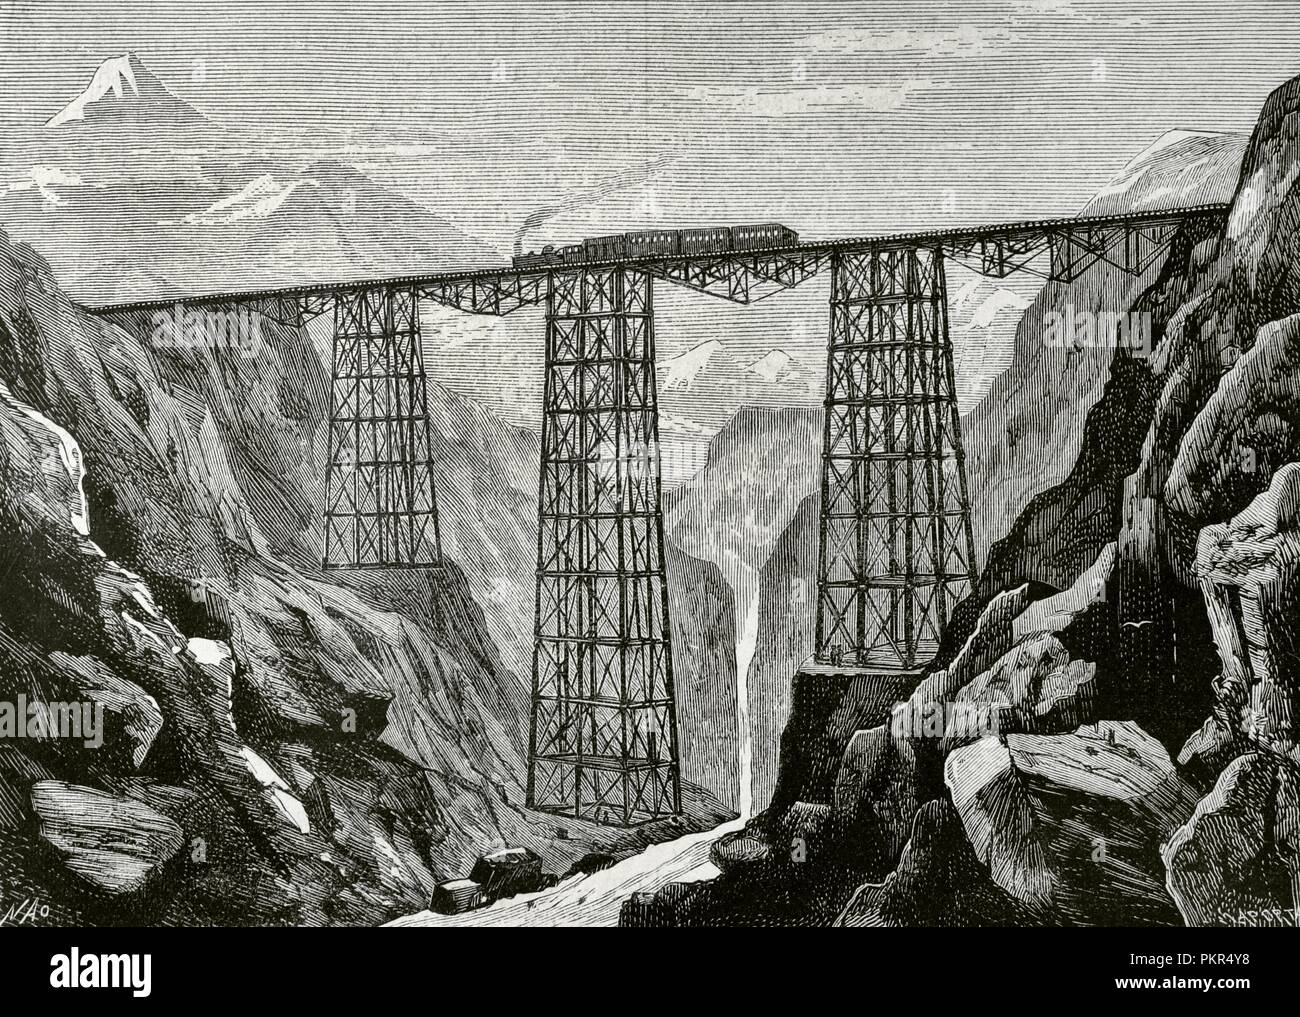 Peru 1885 Lima-La Oroya Railway Andes Scenery Puente Chaupichaca Bridge 